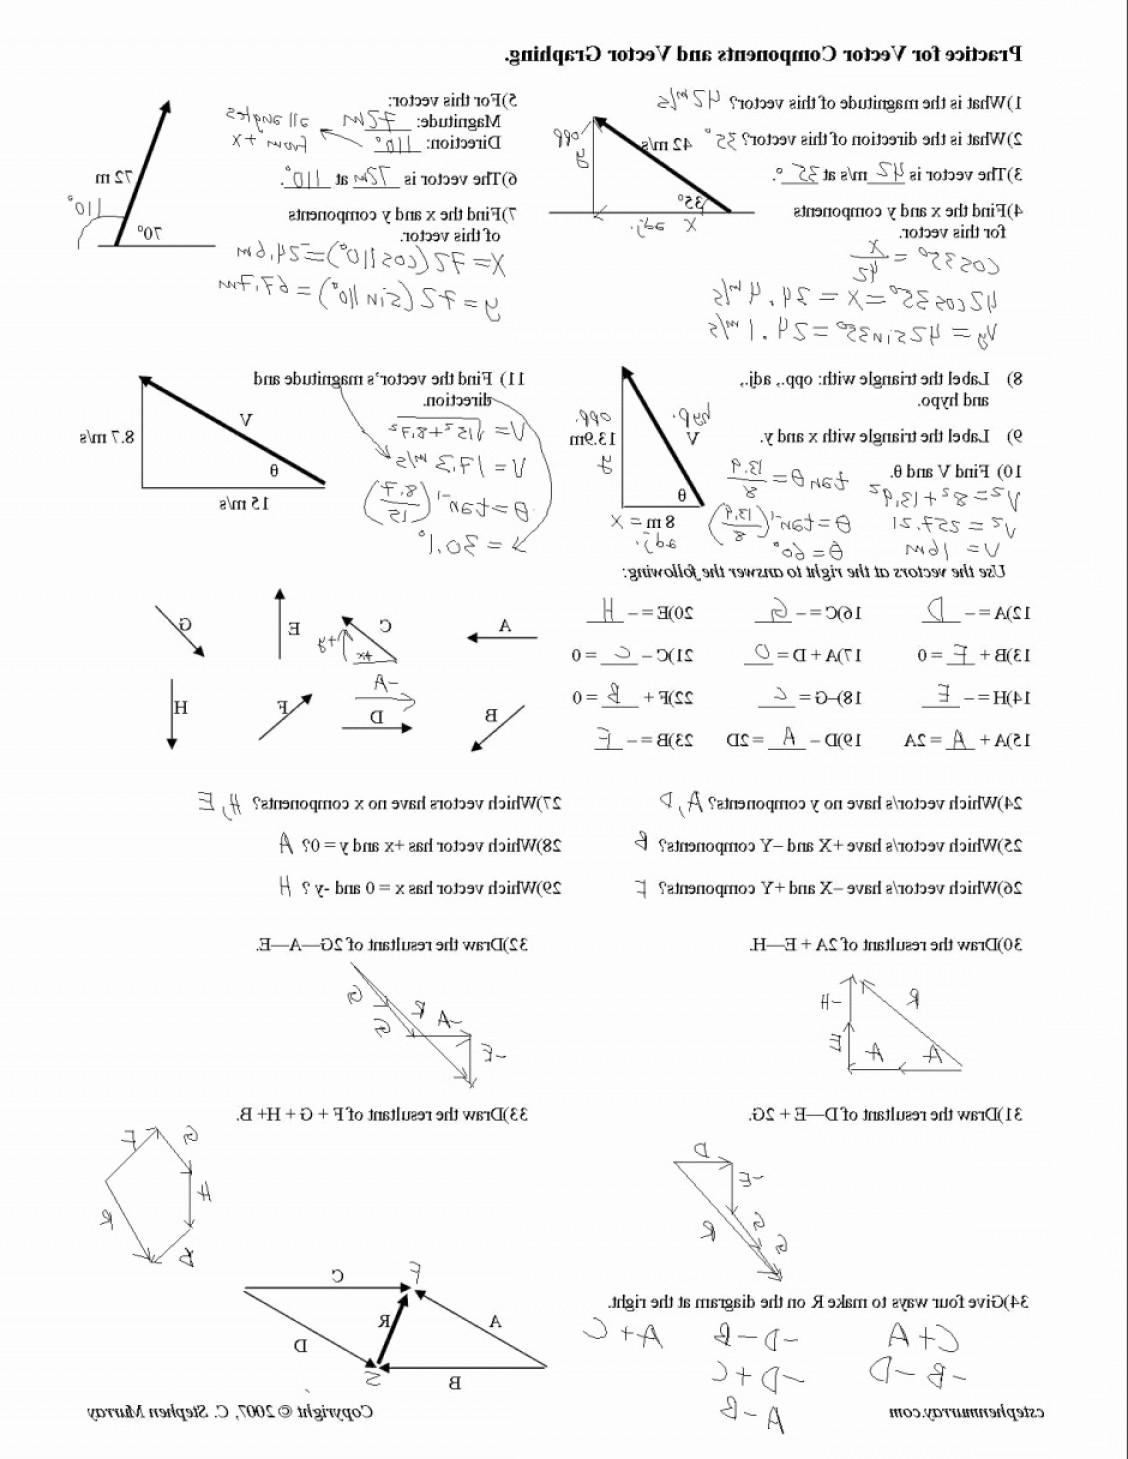 vector-addition-worksheet-printable-pdf-download